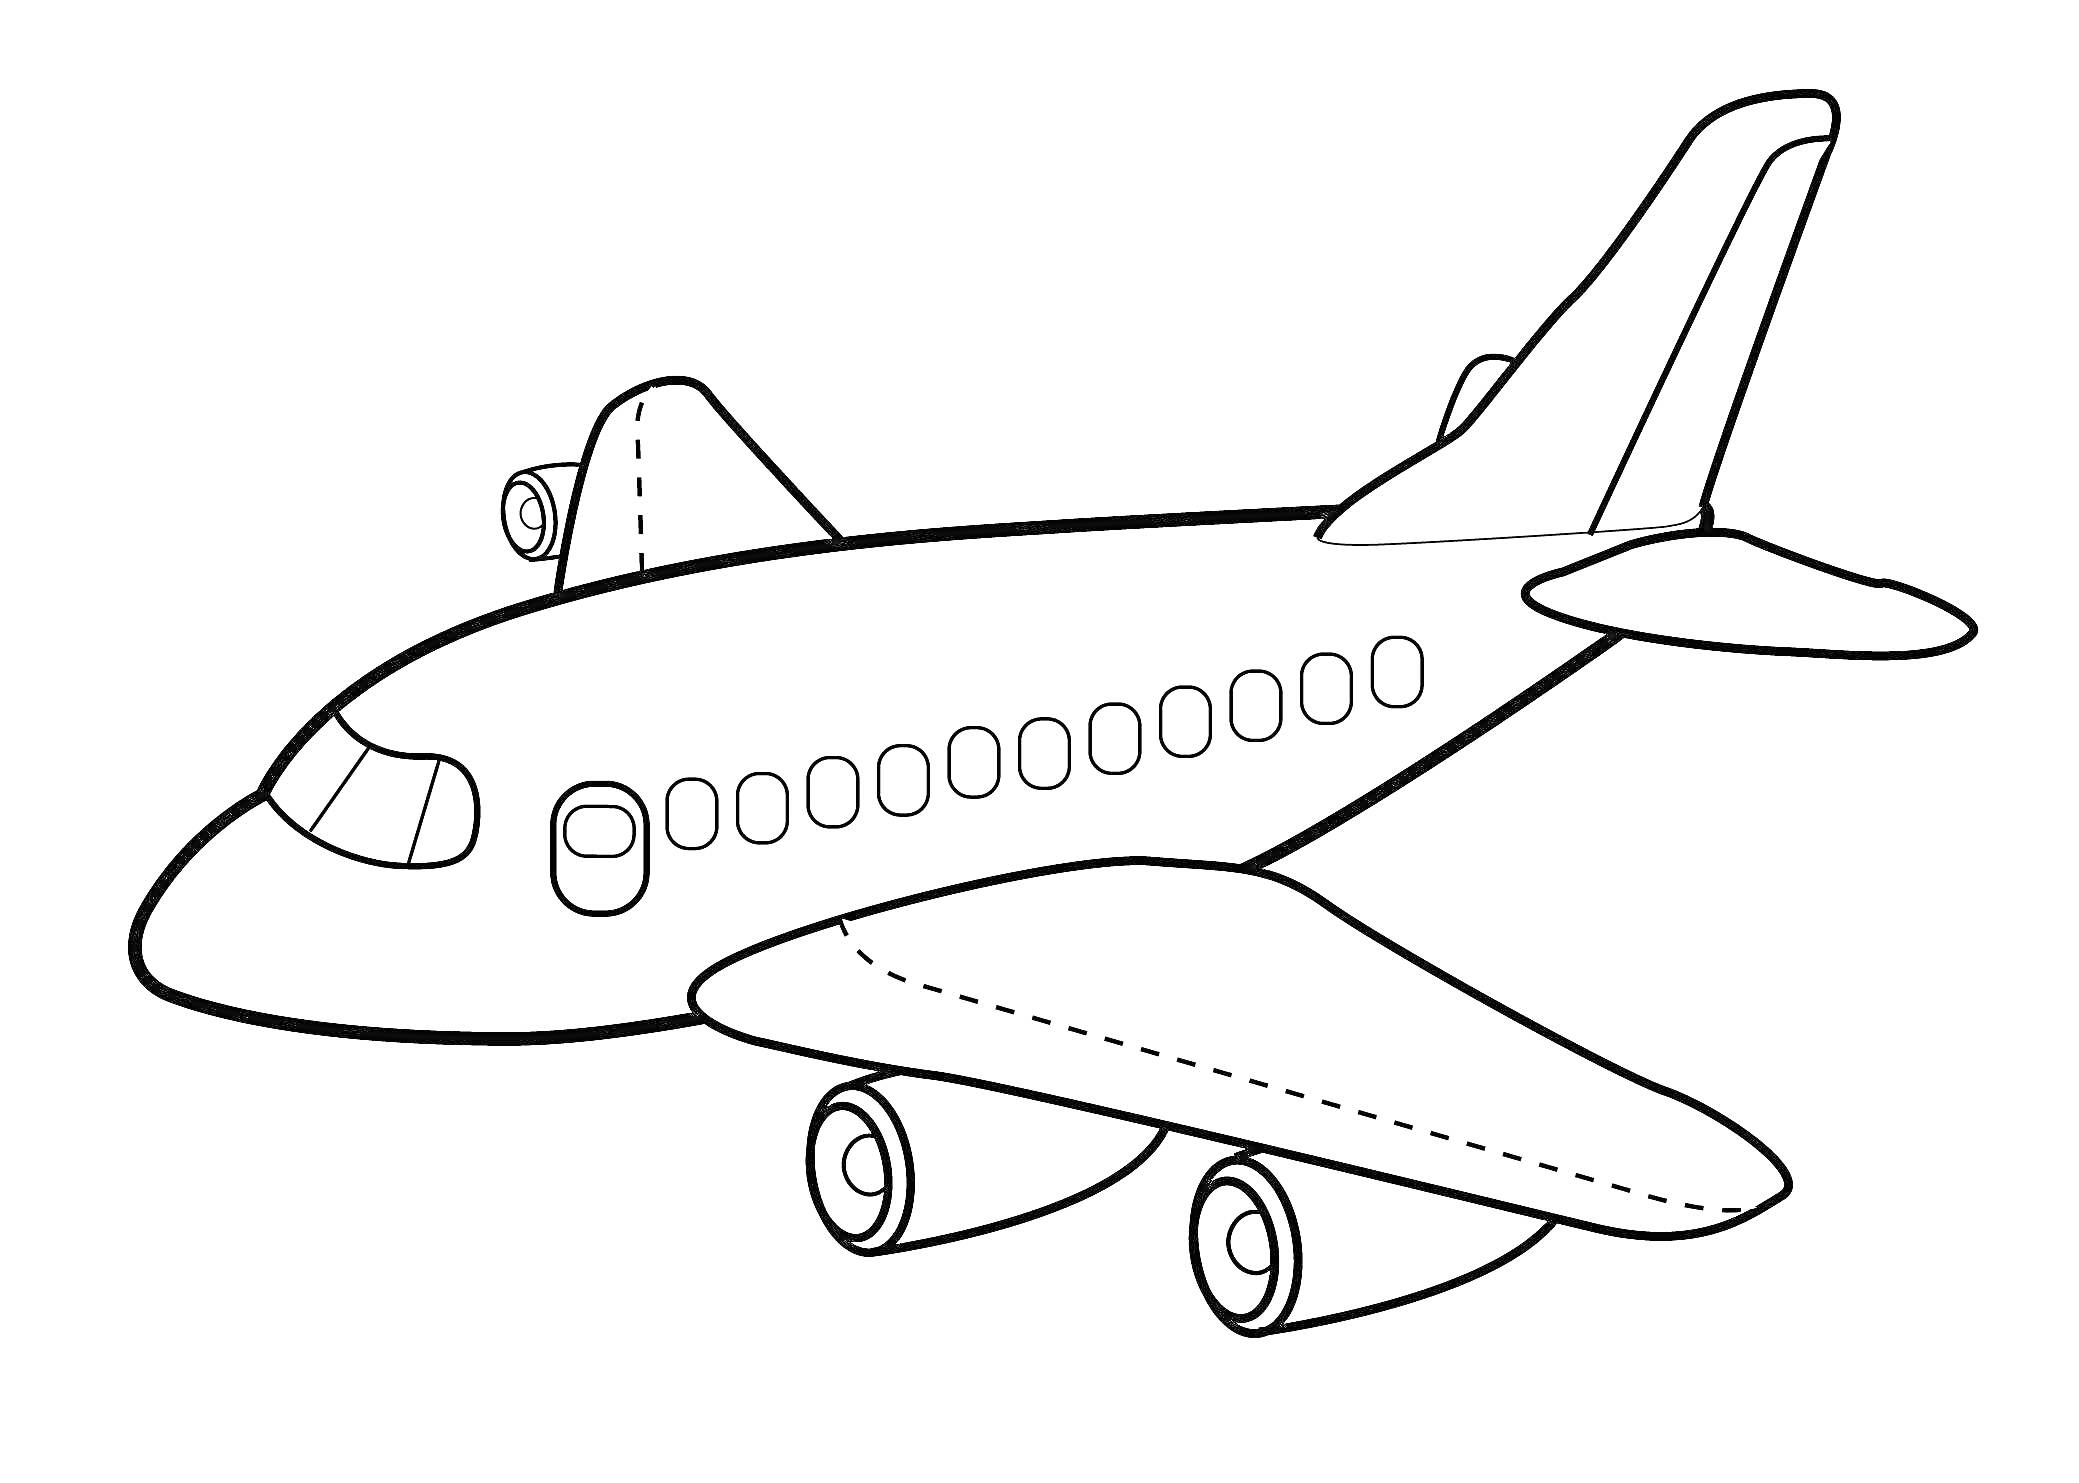 Самолет с иллюминаторами, двумя двигателями под крыльями и двойным хвостовым оперением